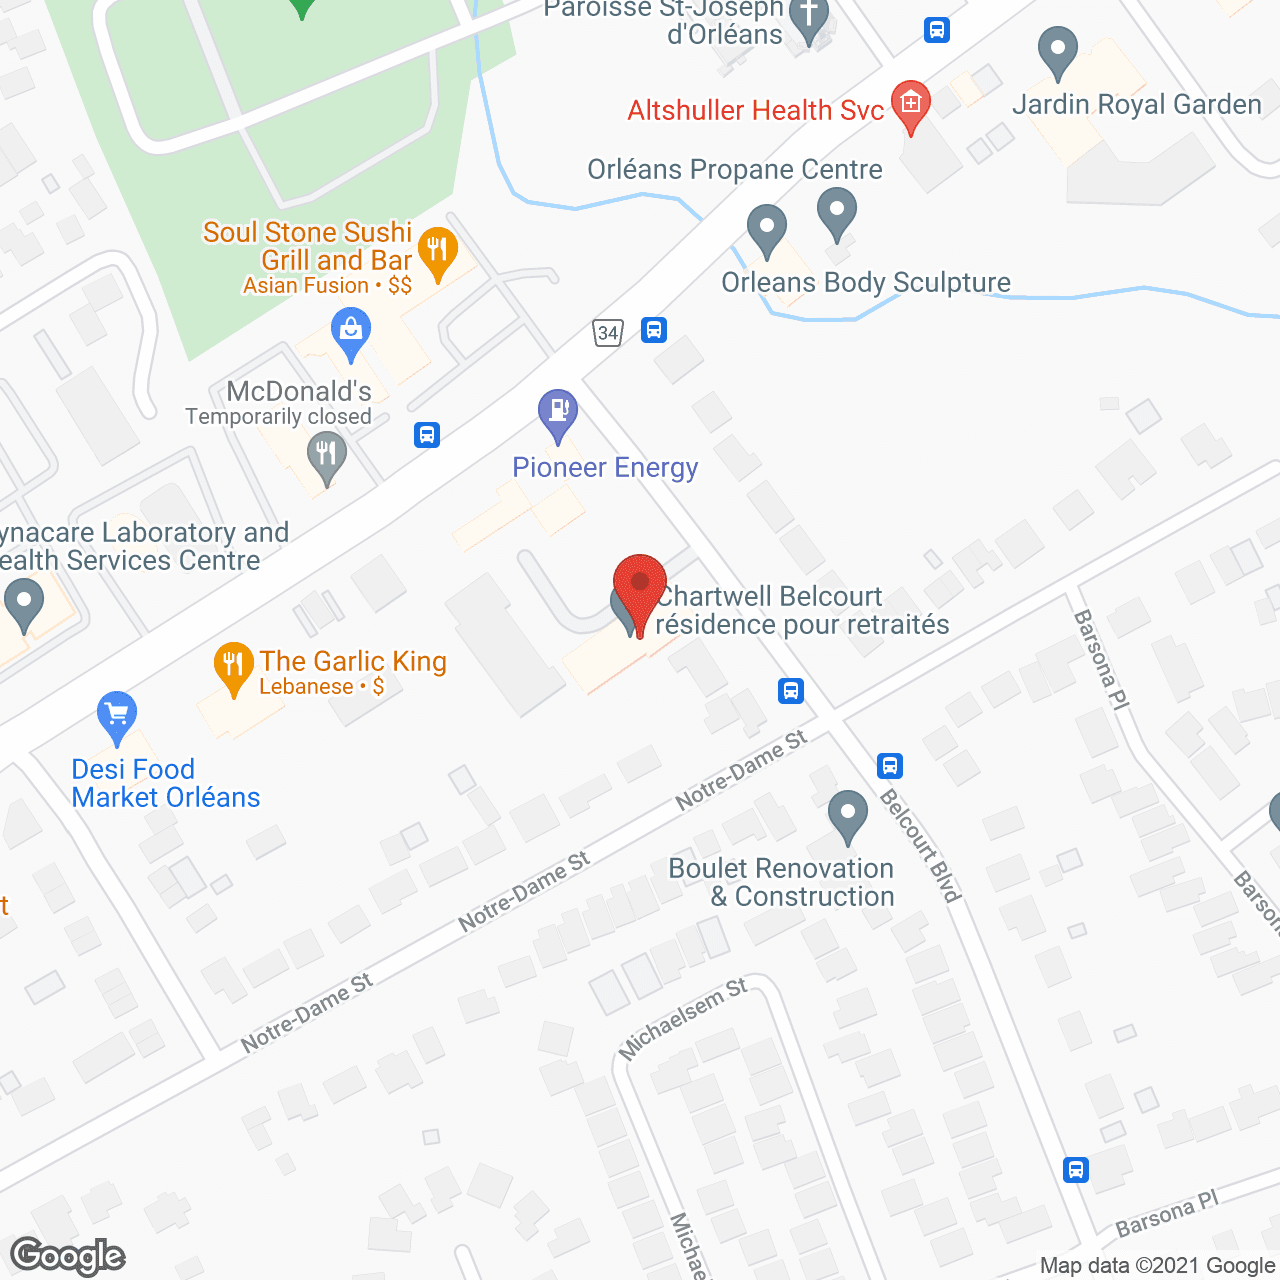 Belcourt Manor in google map